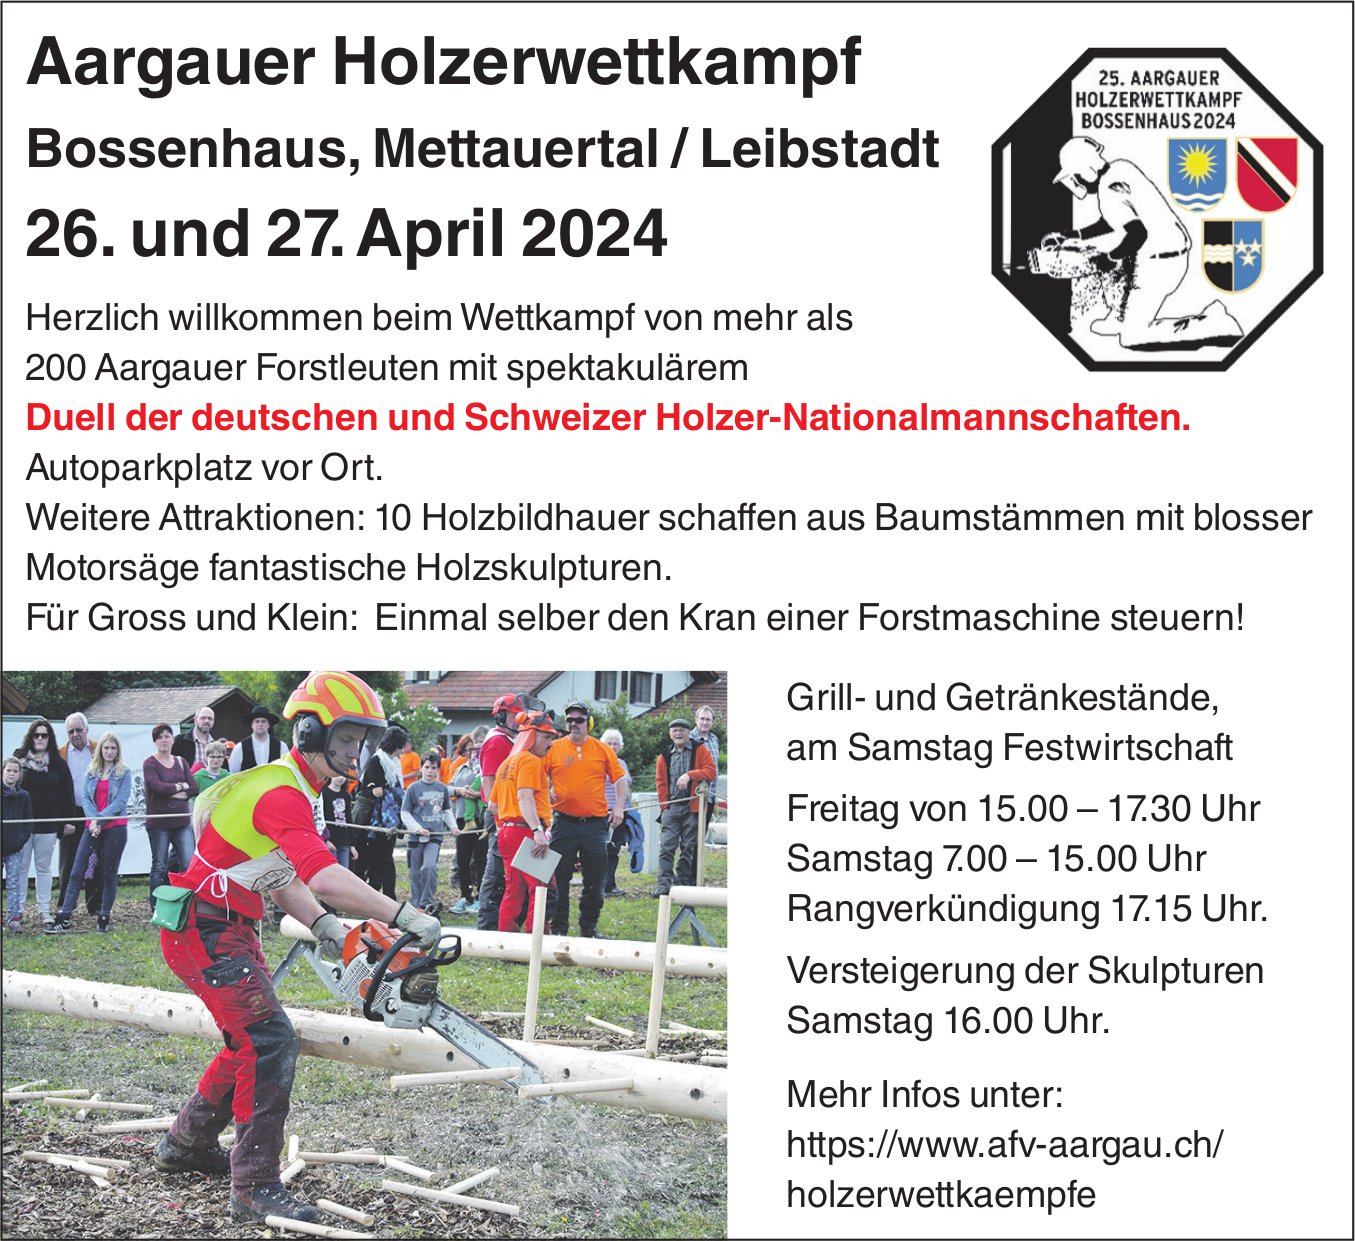 Aargauer Holzwettkampf, 26. und 27. April, Bossenhaus, Mettauertal/Leibstadt